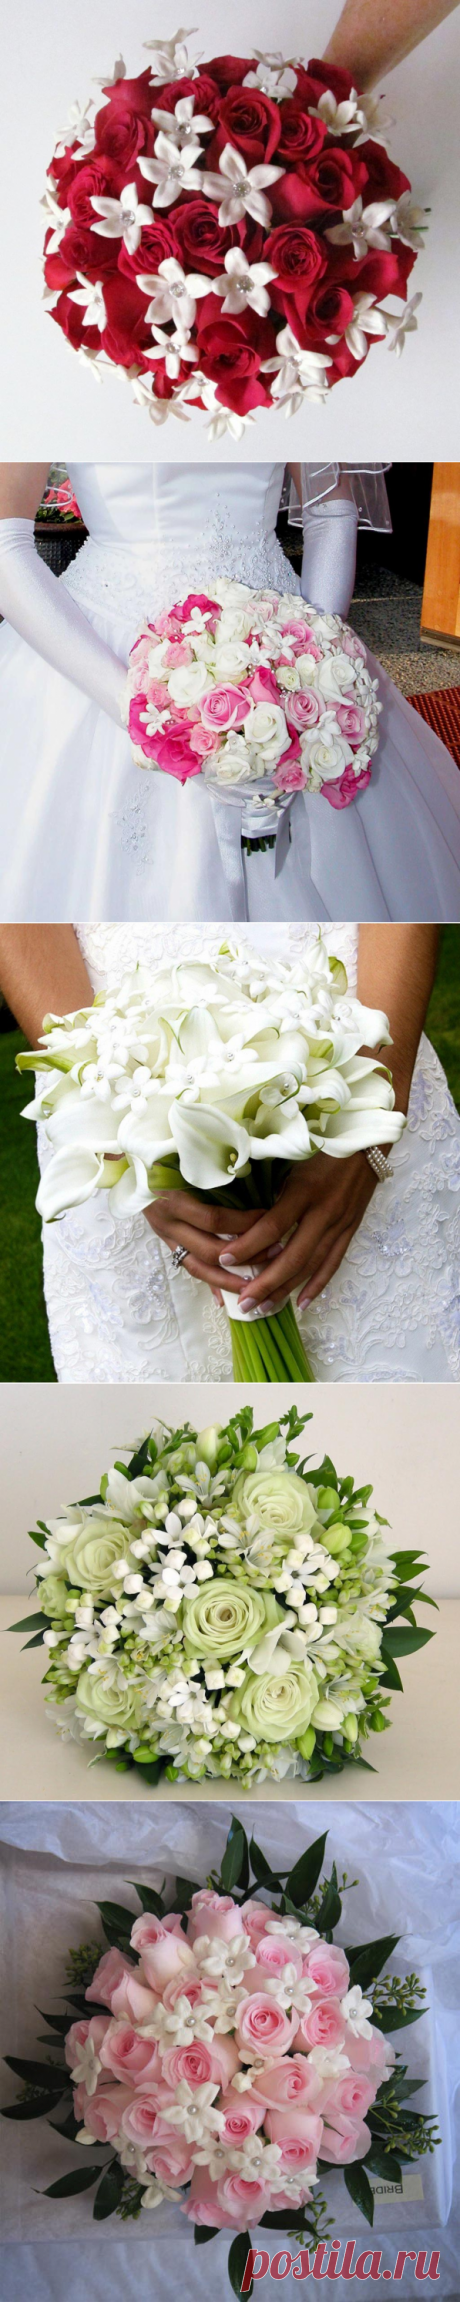 Стефанотисы в букете невесты
Стефанотис или мадагаскарский жасмин, также он известен под названием «цветок невесты» или «лоза фаты».
Букет с этими цветами подойдет нежной, утонченной невесте, создаст ощущение легкости и романтичности свадебного образа.
Стефанотис бывает только белого цвета. Обильно цветет и, согласно приметам, приносит удачу. Эти очаровательные, крошечные цветы обладают сказочным ароматом и цветут с весны до осени.